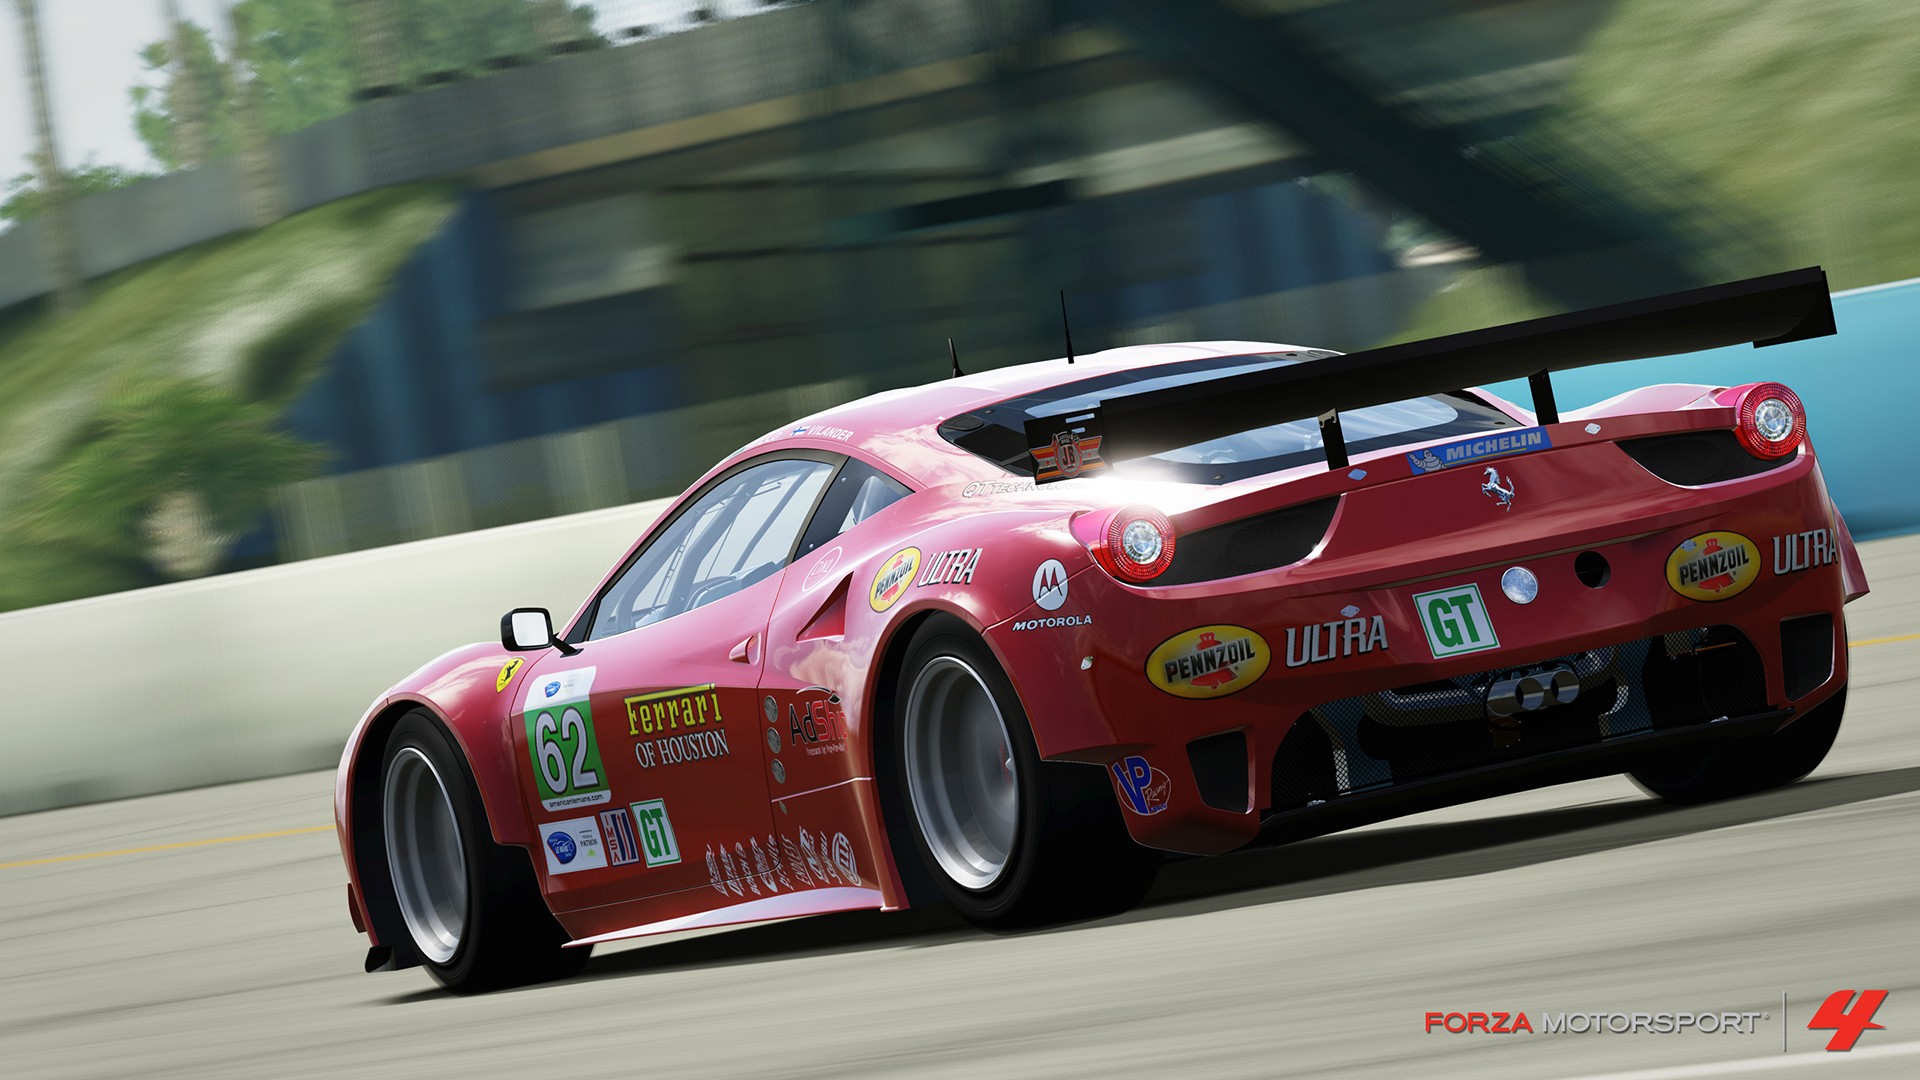 Forza reg. Форза Моторспорт 4. Forza Motorsport 4 [Xbox 360]. Forza Motorsport 4 Ferrari. Ferrari 458 Italia Forza Horizon 4.